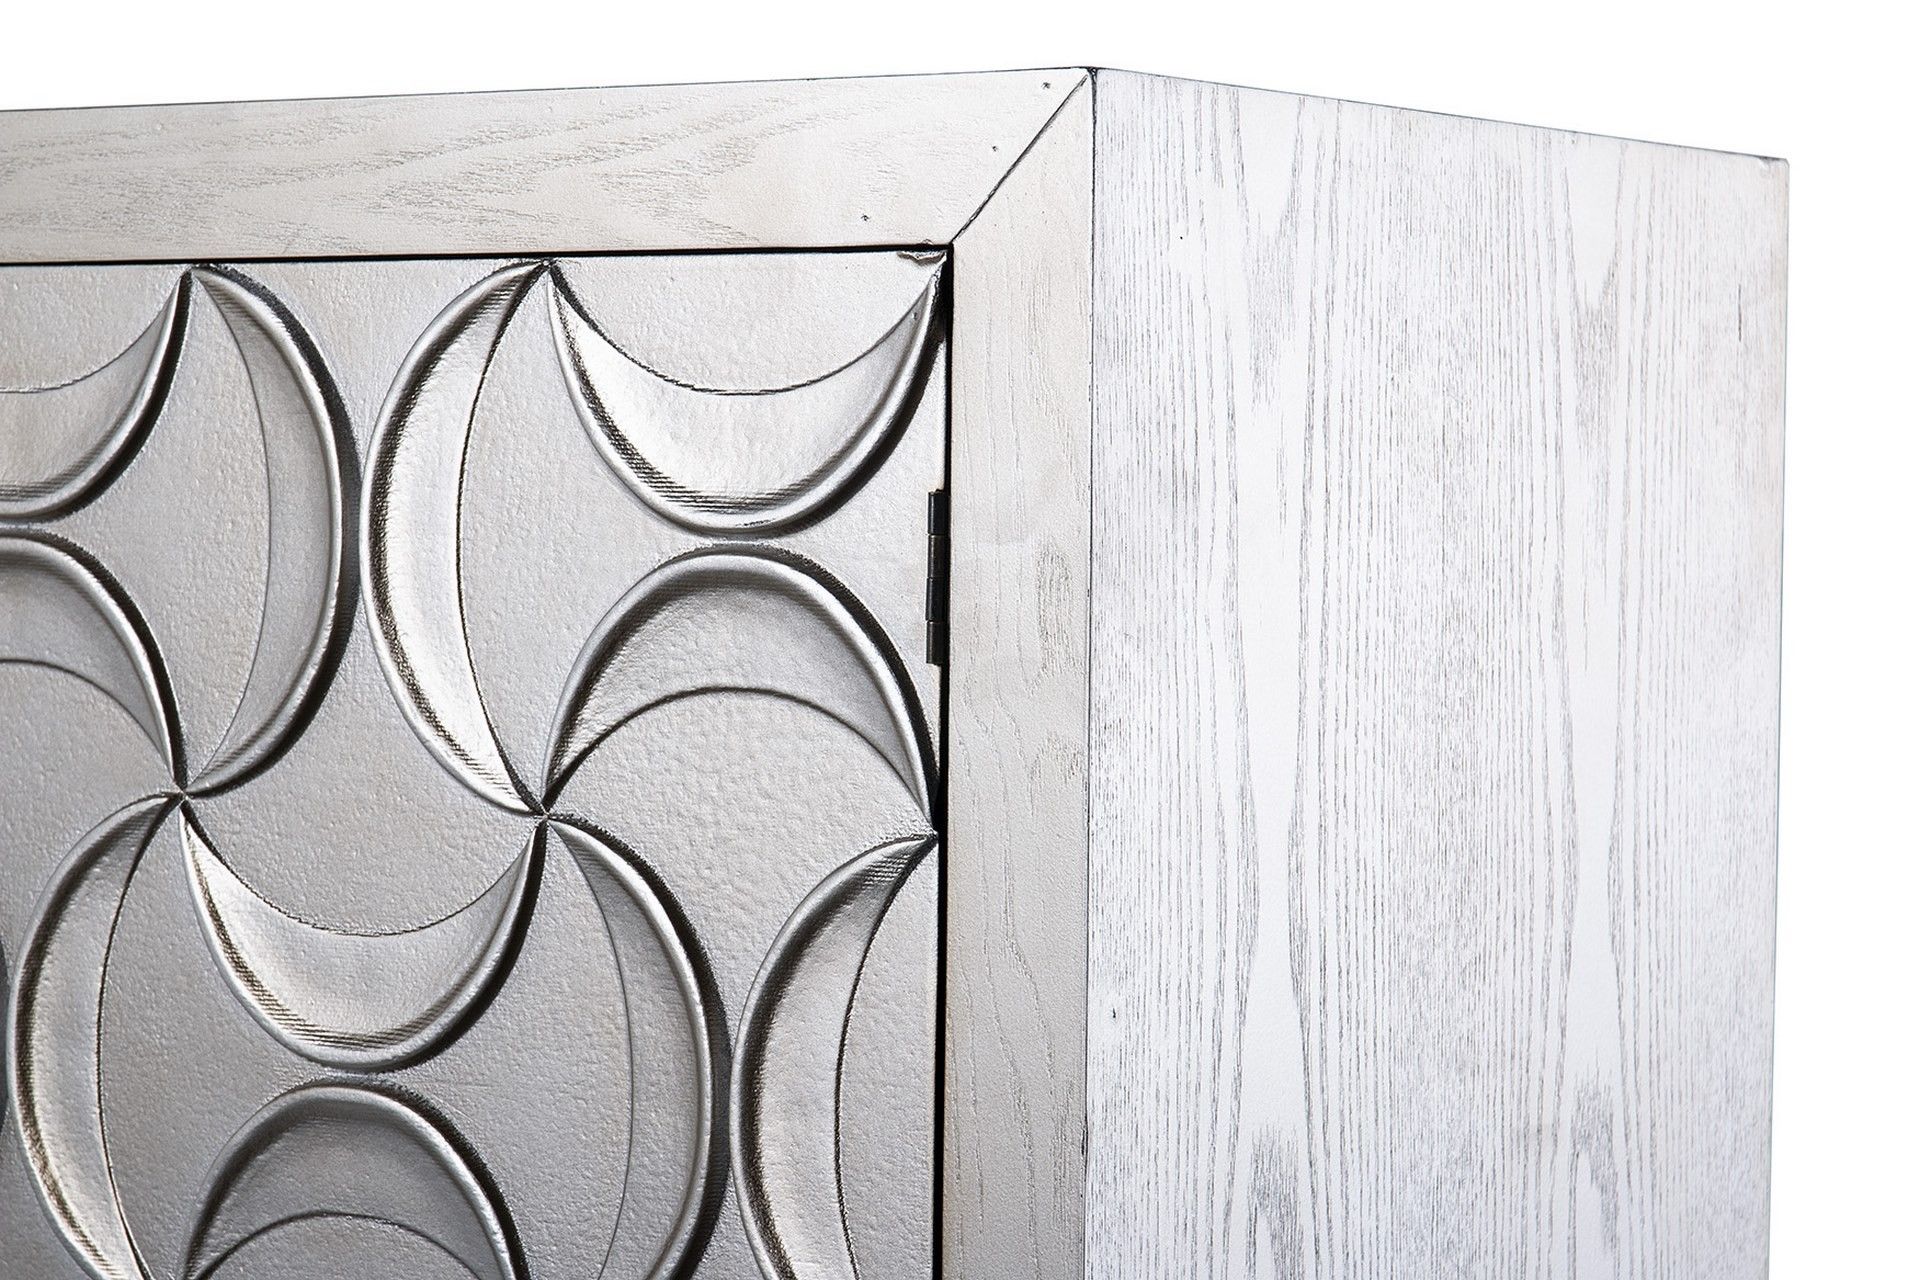 Cabinet alto madera champagne 100x45x160 cm